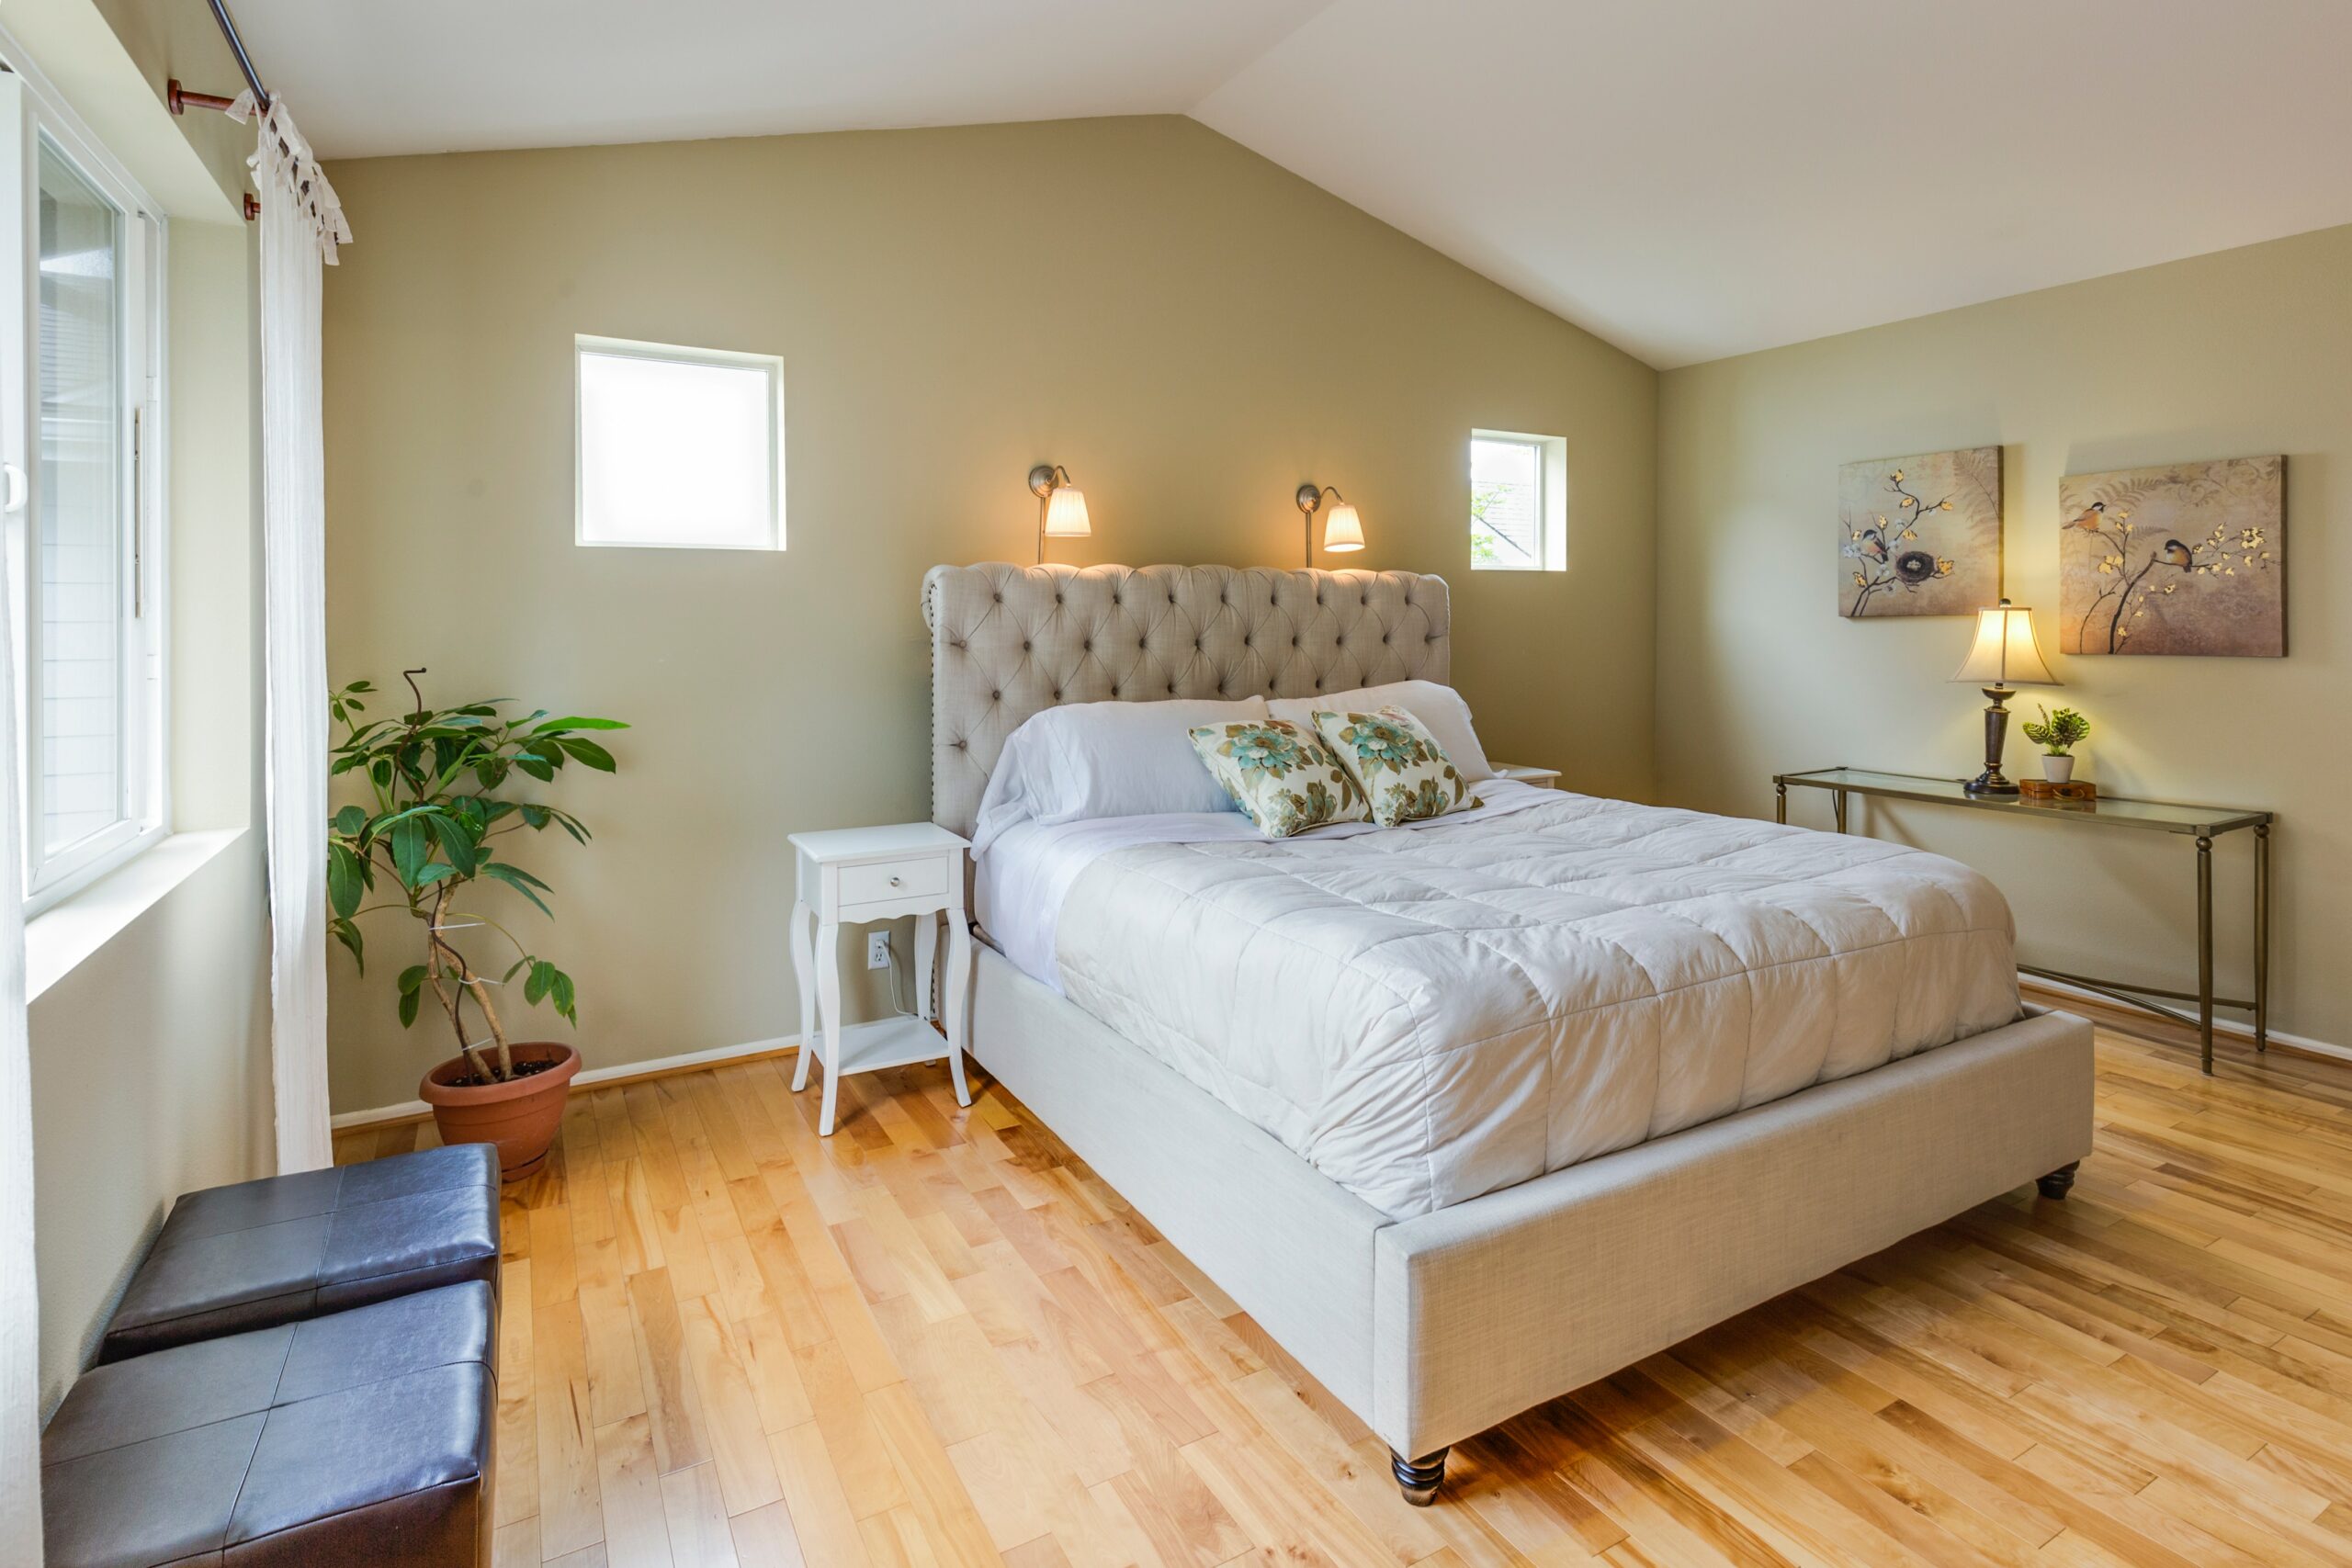 Cabeceros de cama de madera, rústicos, decorados o tapizados